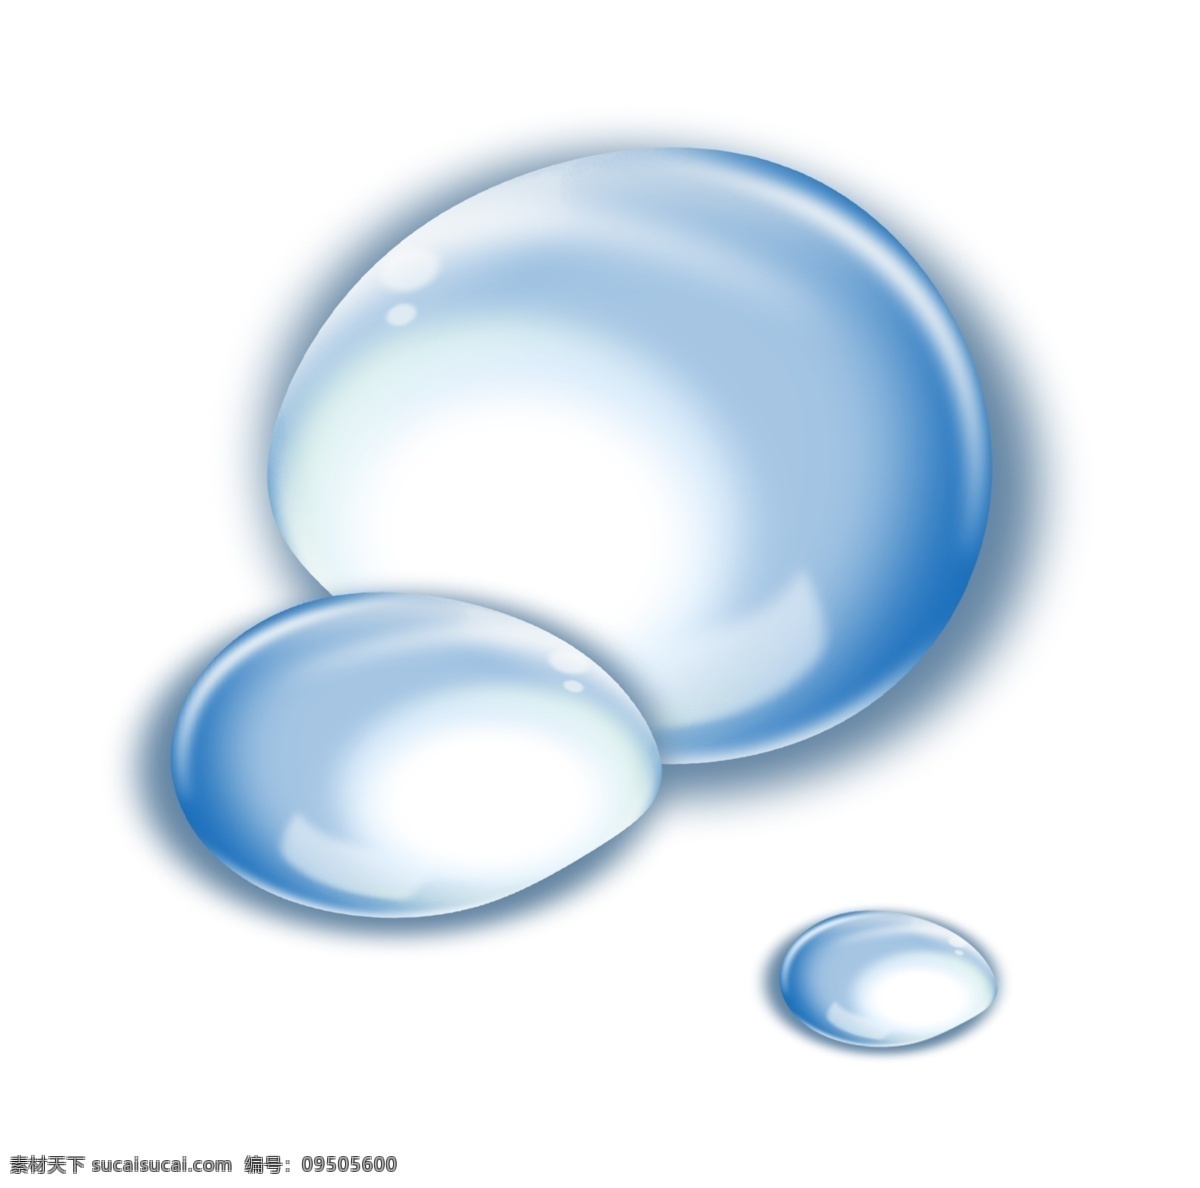 手绘 透亮 水球 插画 透亮的水球 蓝色透亮水珠 手绘水珠 卡通水珠 水滴 晶莹剔透水珠 水球插画